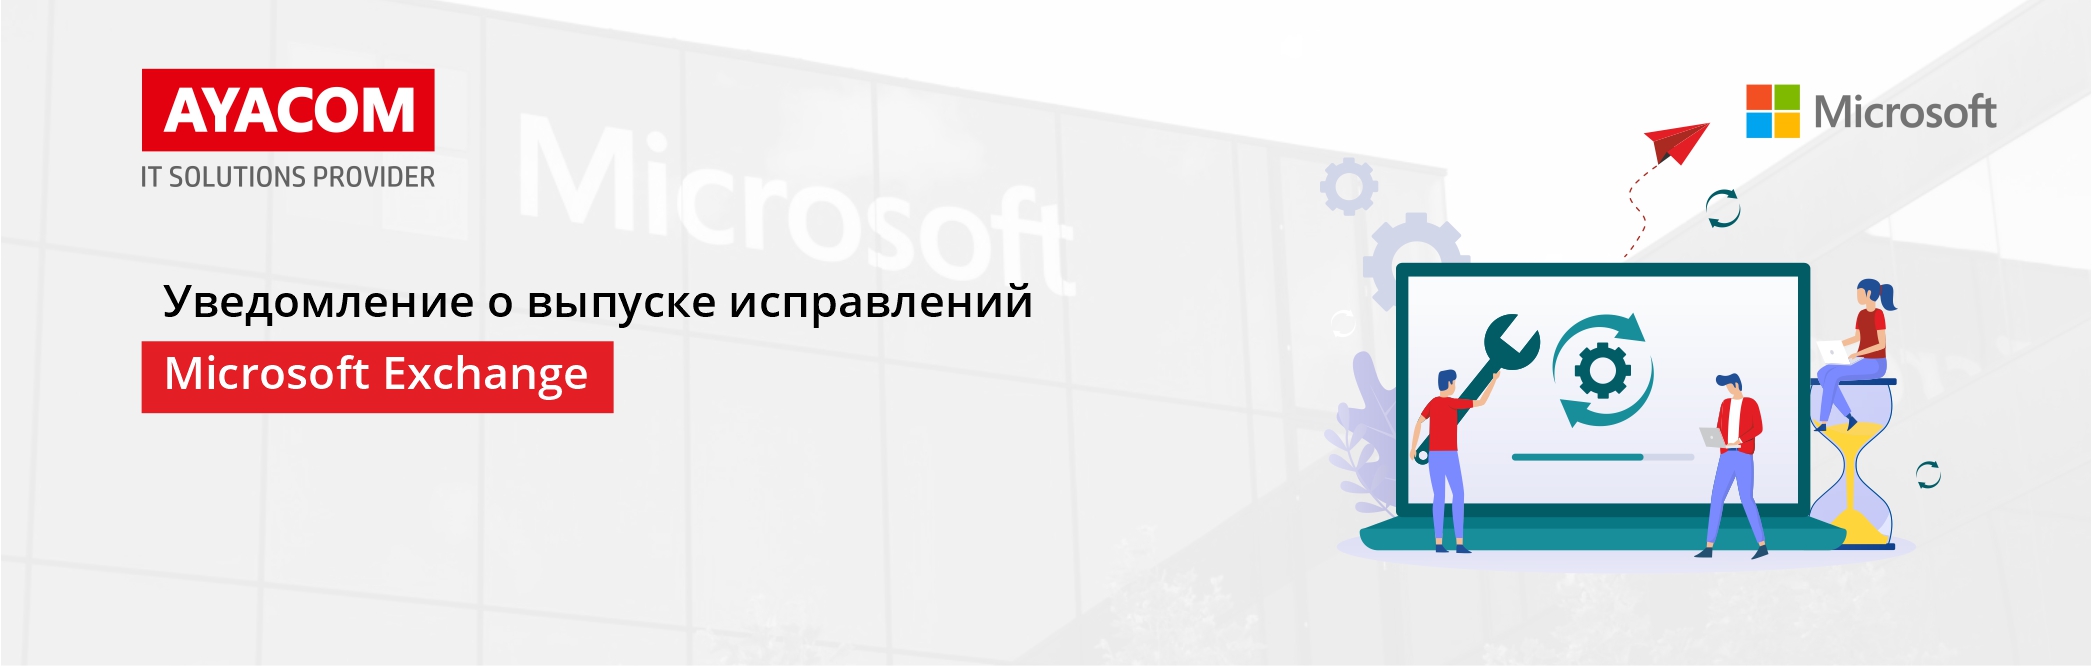 Уведомление о выпуске исправлений Microsoft для нескольких различных локальных уязвимостей нулевого дня Microsoft Exchange Server.